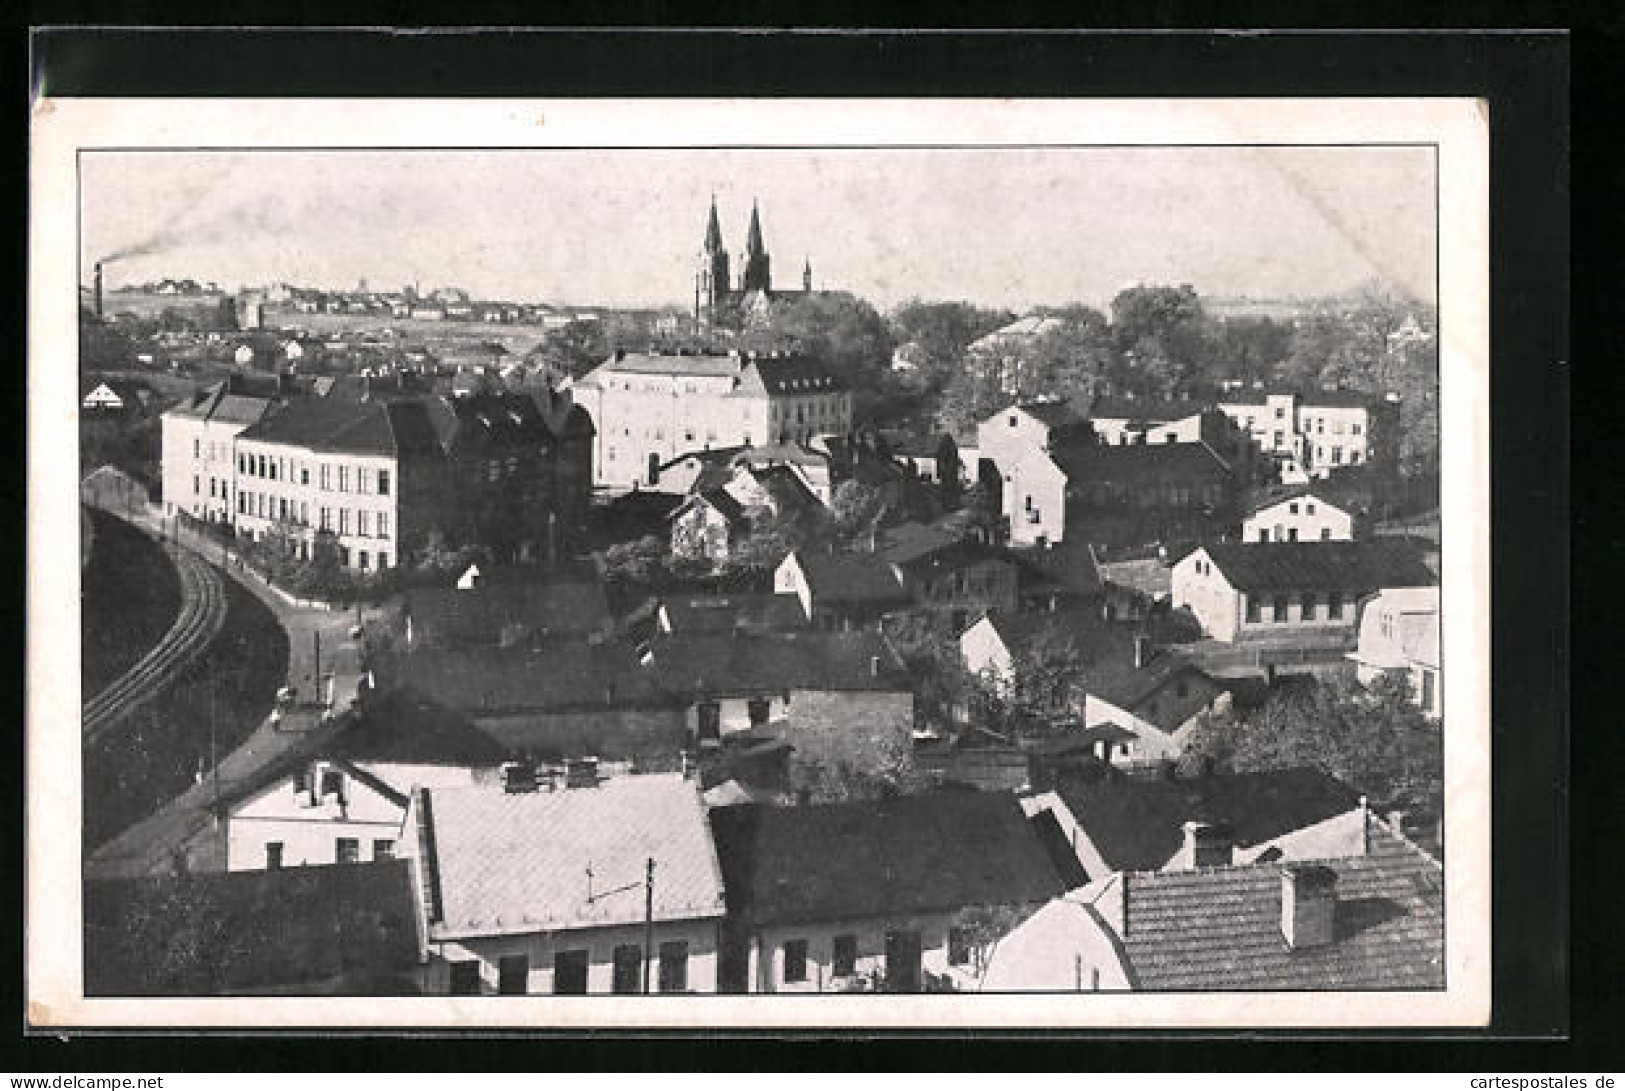 AK Orlova, Vystava Tesinska A Ostravska 1926, Pohled Na Orlovou Od Jihovychodu  - República Checa